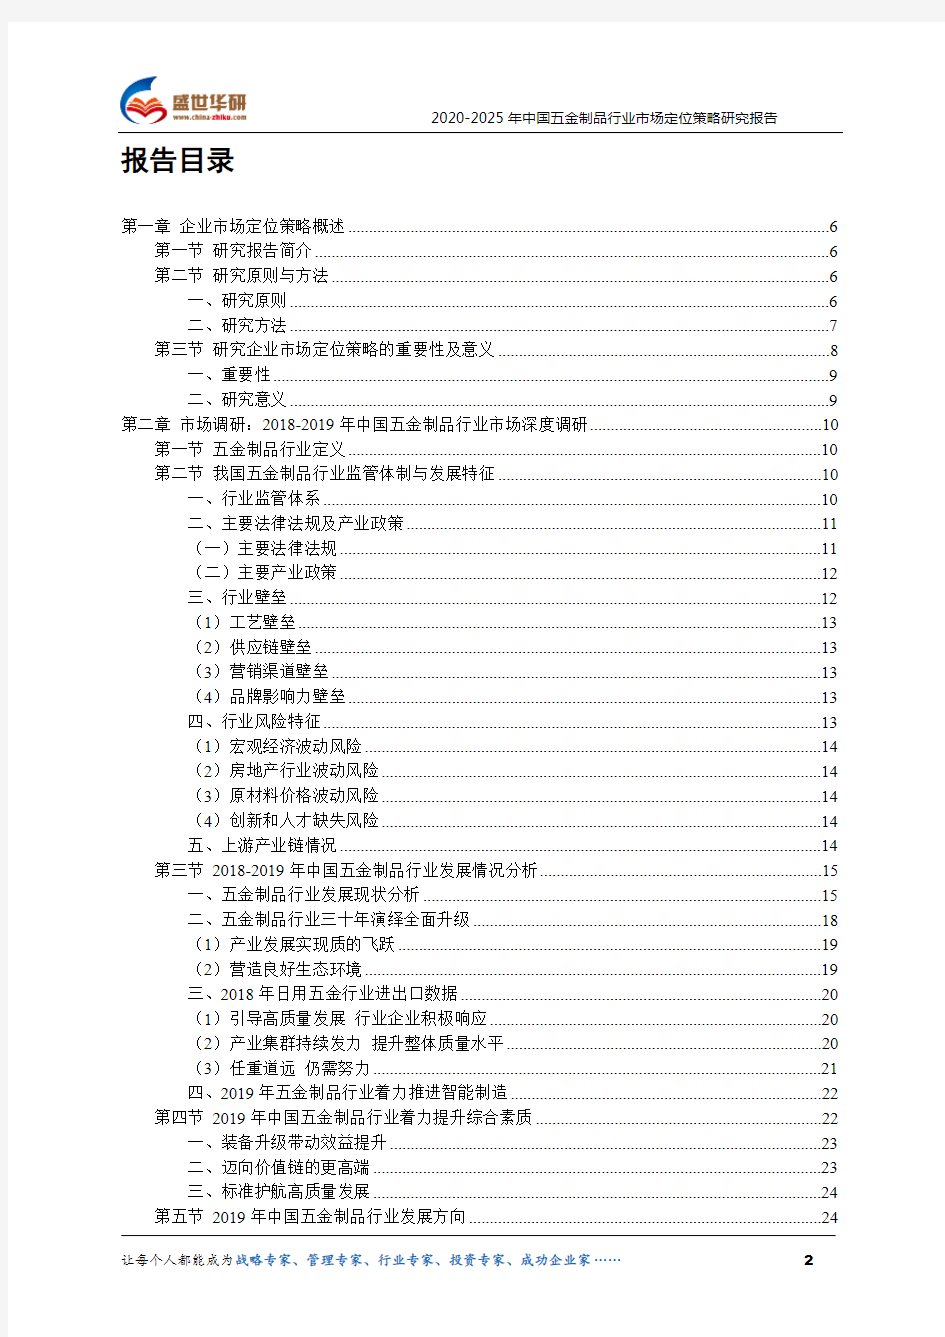 【完整版】2020-2025年中国五金制品行业市场定位策略研究报告